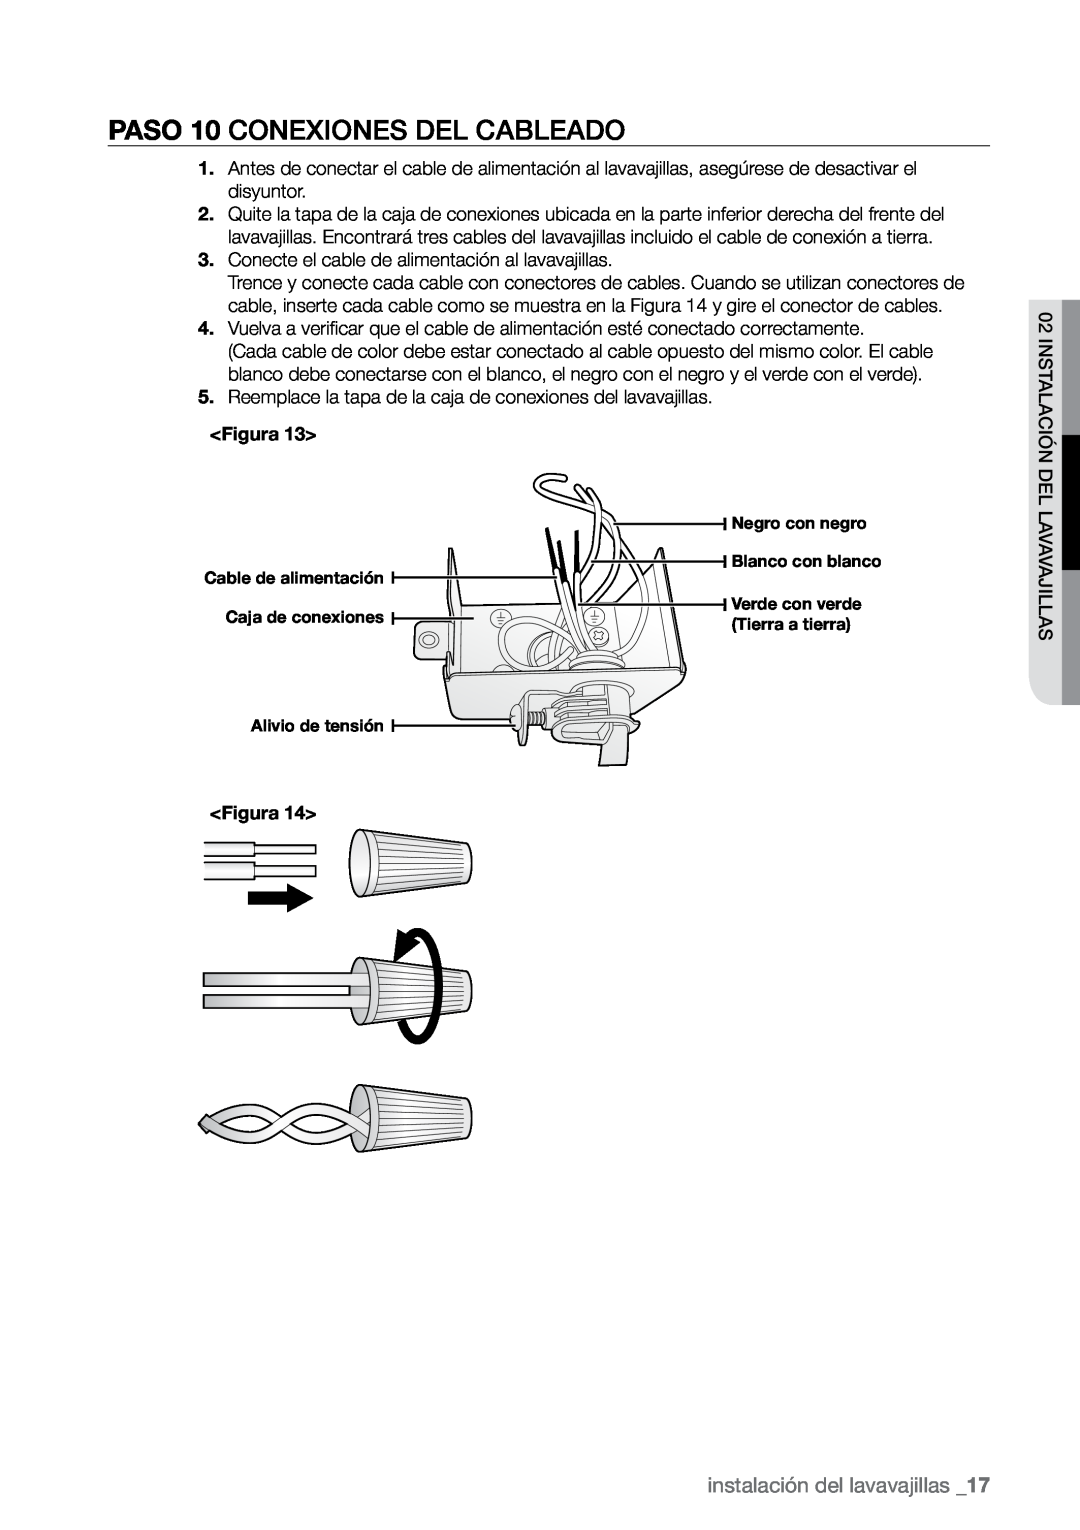 Samsung DMR77, DMR78, DMR57 manual PASO 10 Conexiones del cableado, instalación del lavavajillas 